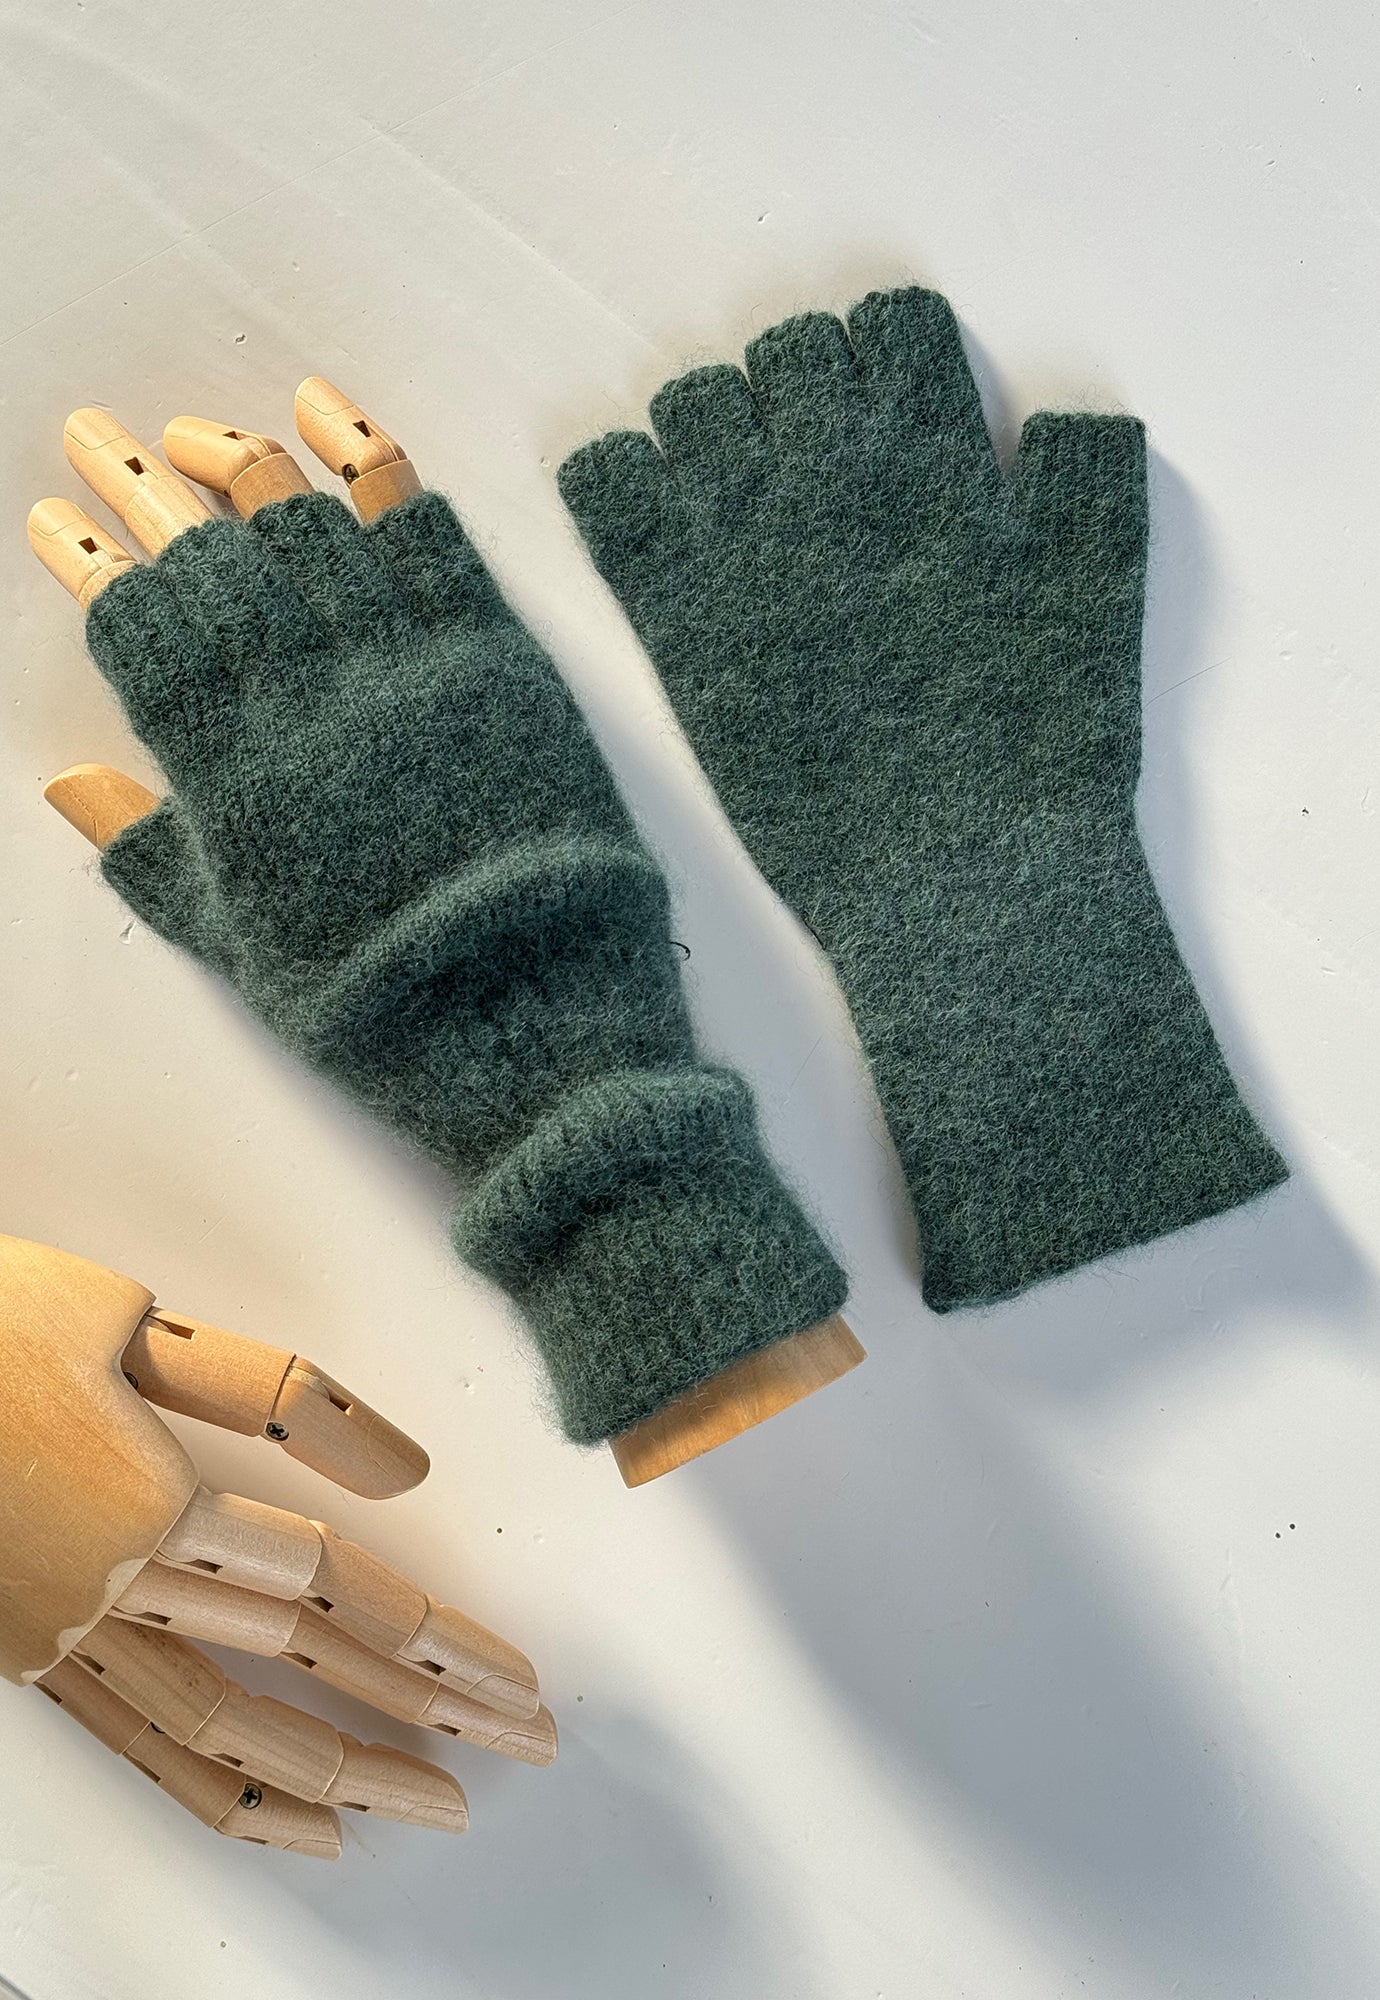 penelope durston - angora fingerless gloves - mid